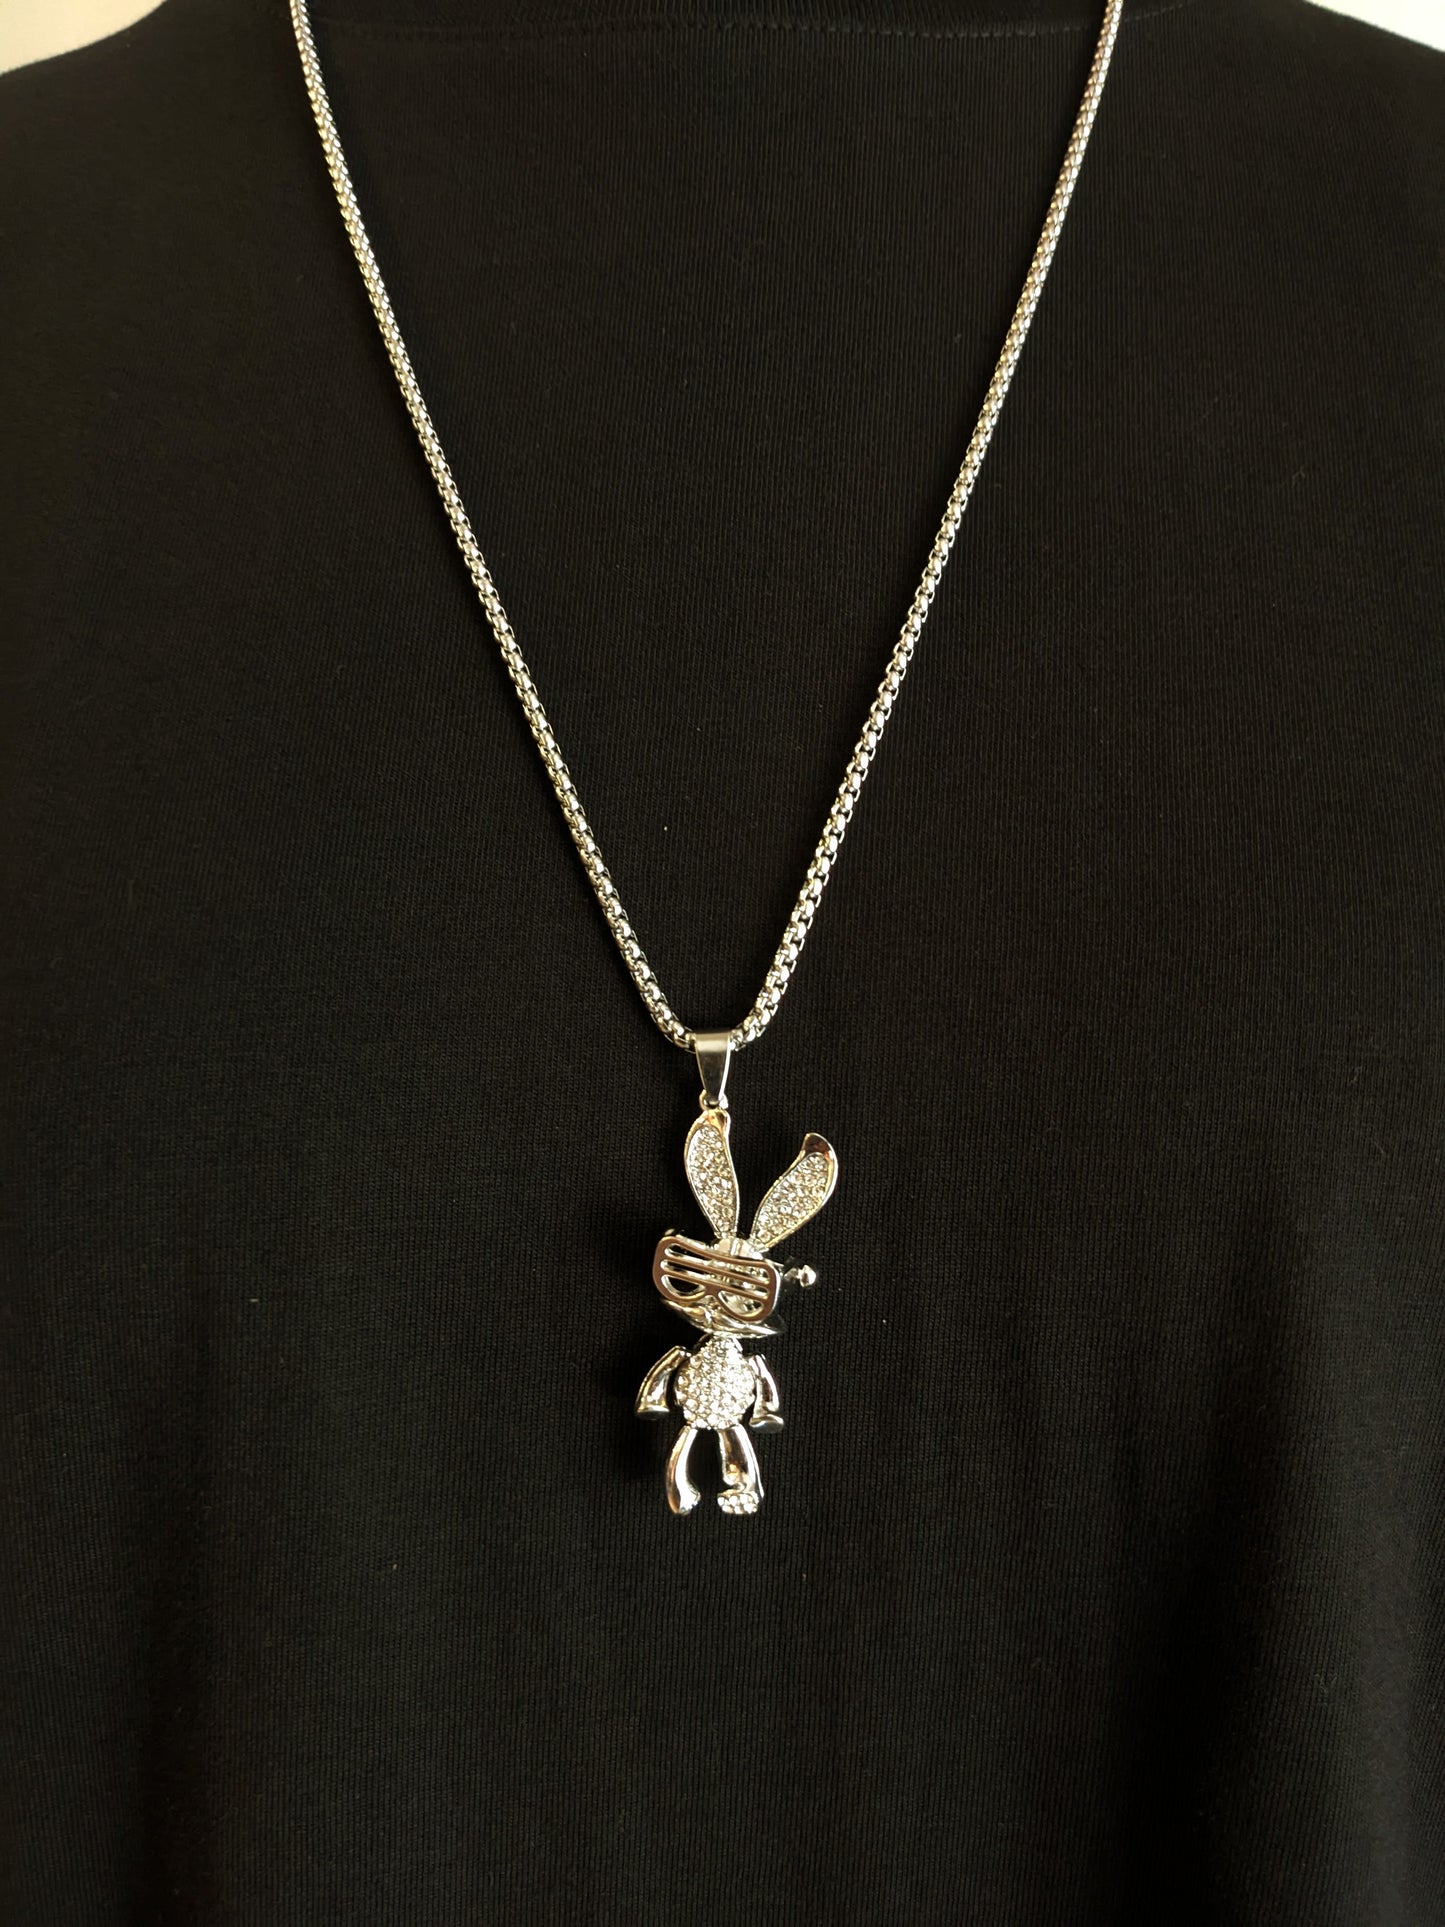 Bugs Bunny Chain